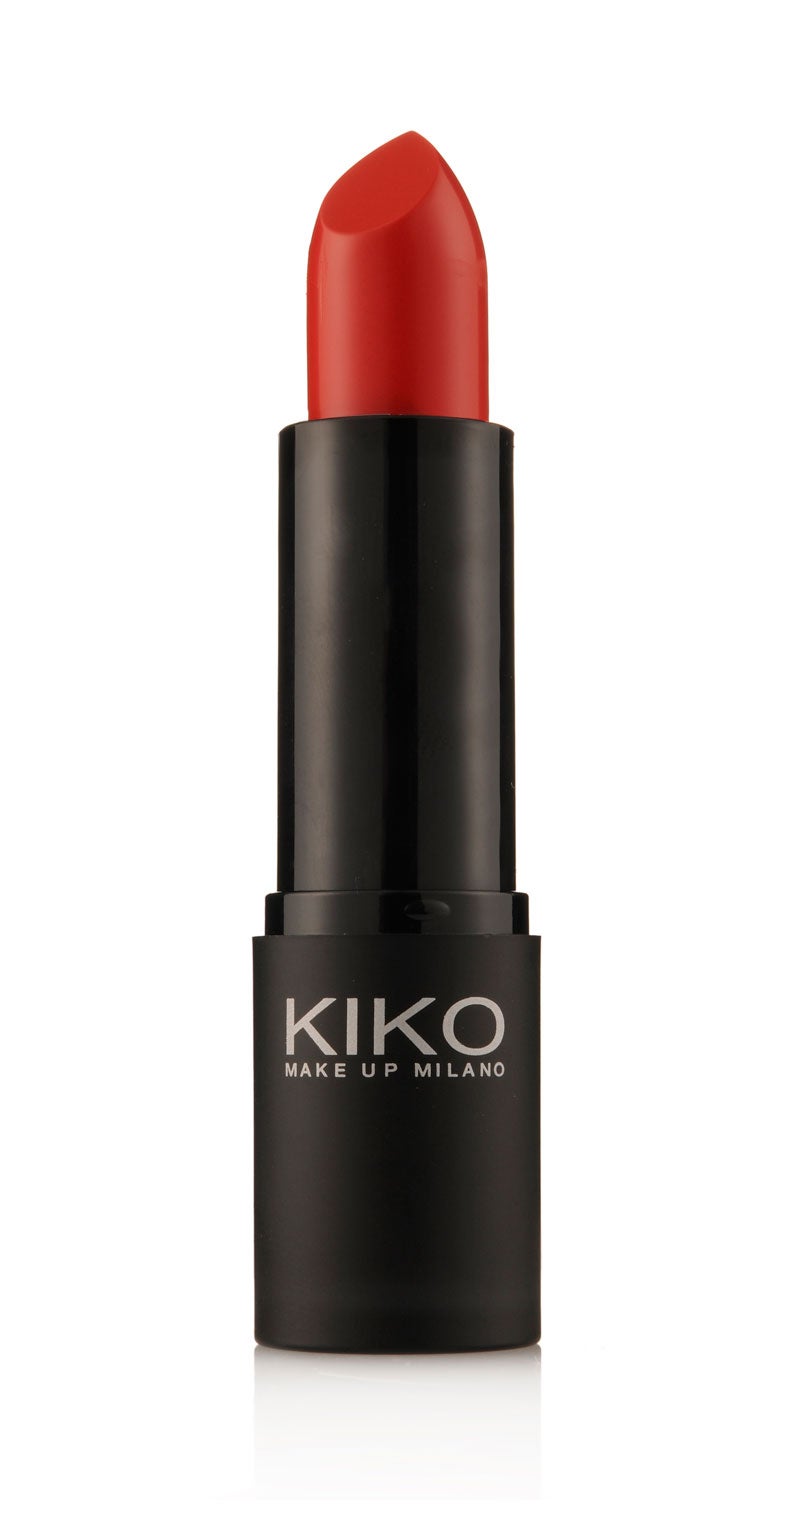 Smart lipstick in 908 True Red, £3.90, kikocosmetics.co.uk